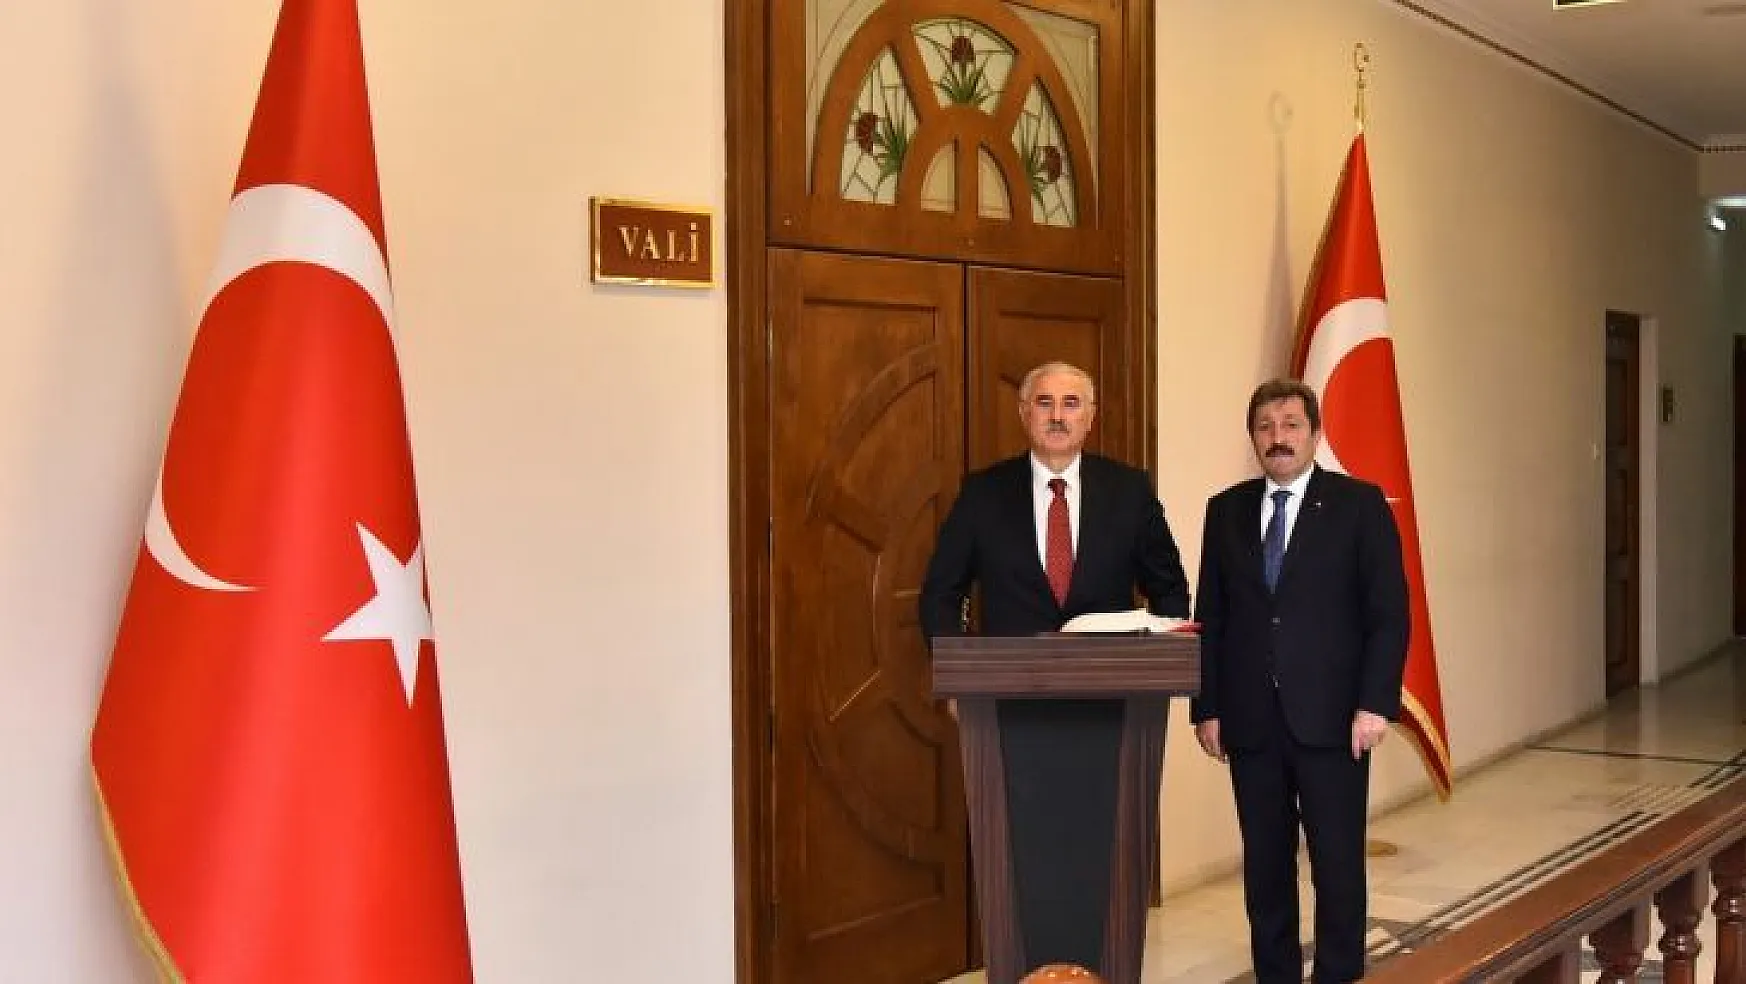 Yargıtay 1. Başkanı Mehmet Akarca ve Yargıtay Cumhuriyet Başsavcısı Bekir Şahin, Vali Orhan Tavlı'yı ziyaret etti